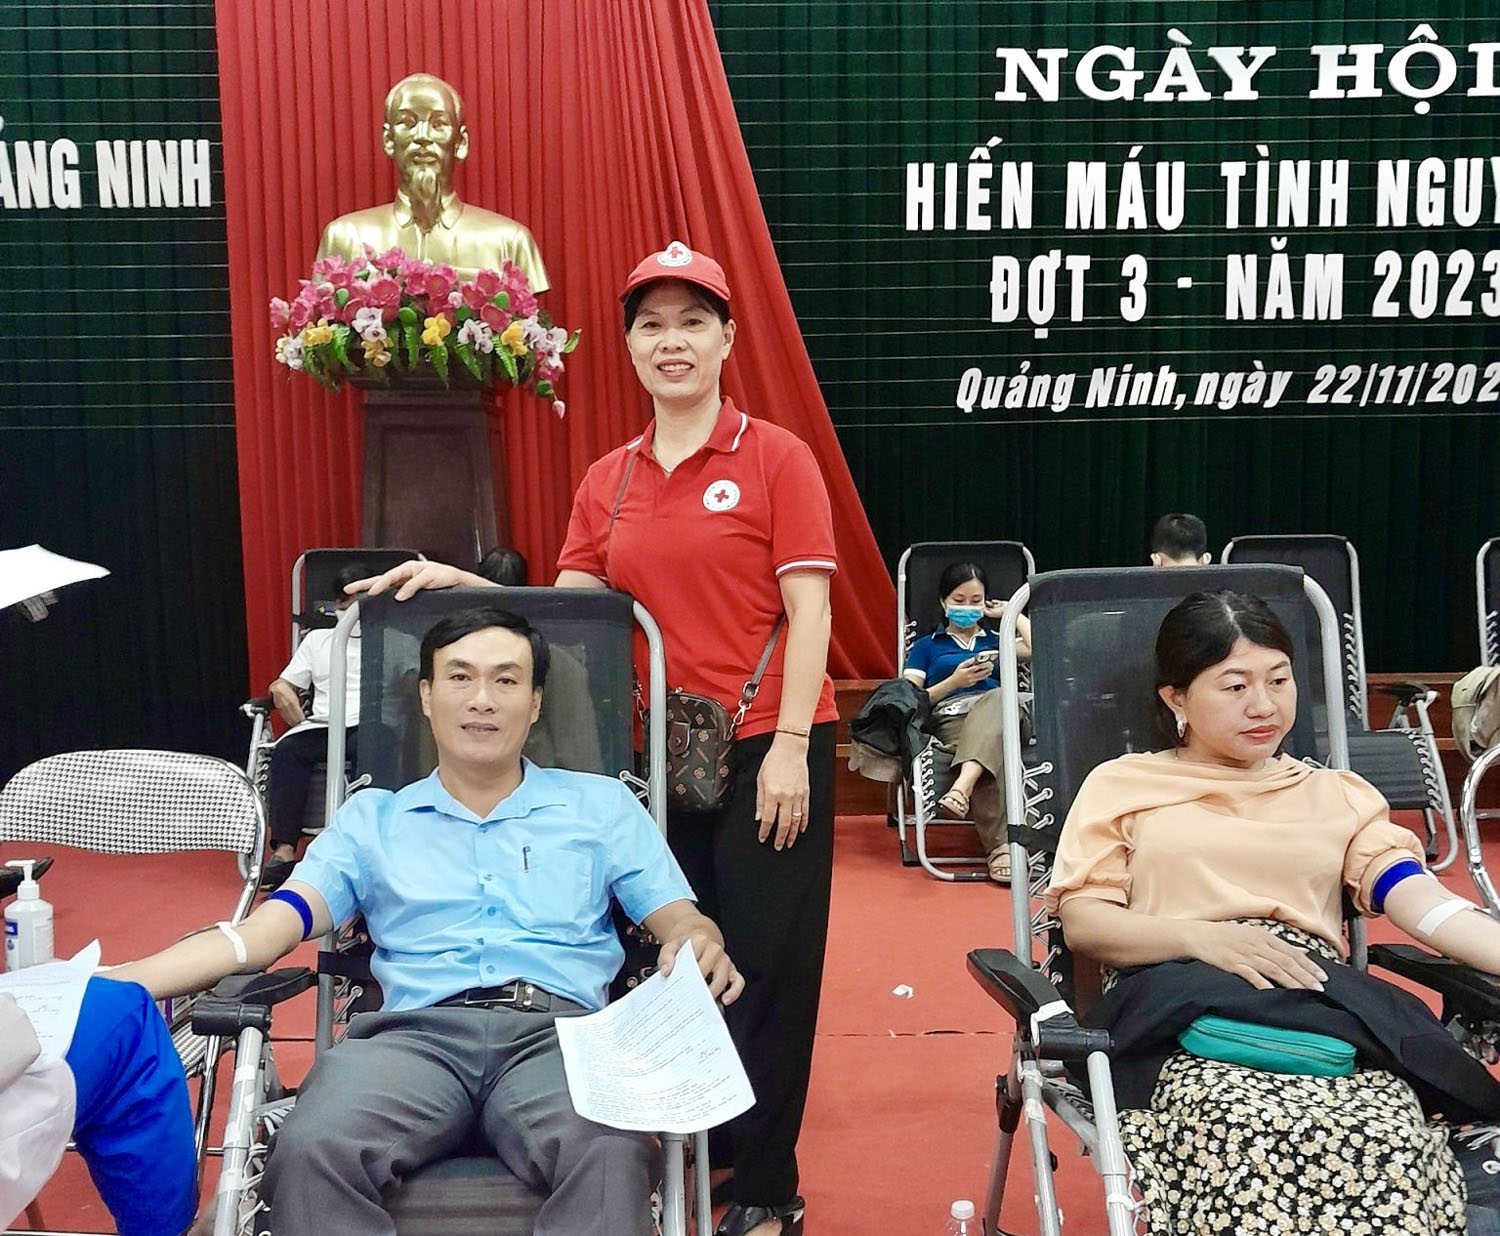 Quảng Ninh: Thu trên 1.000 đơn vị máu từ Ngày hội hiến máu tình nguyện